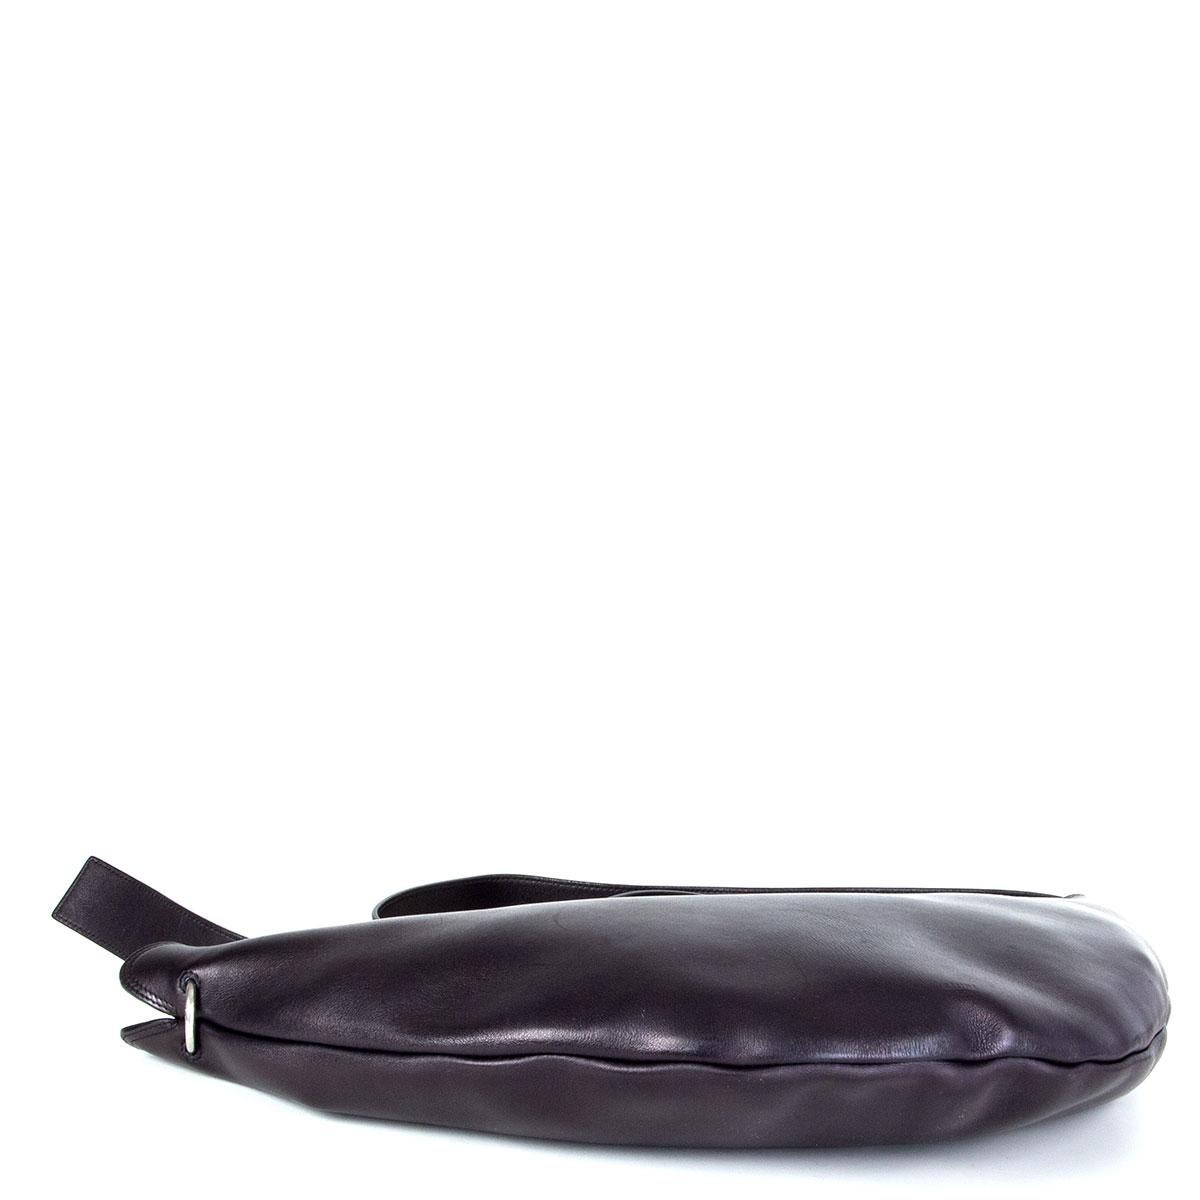 Black CELINE black leather MEDIUM SWING Shoulder Bag